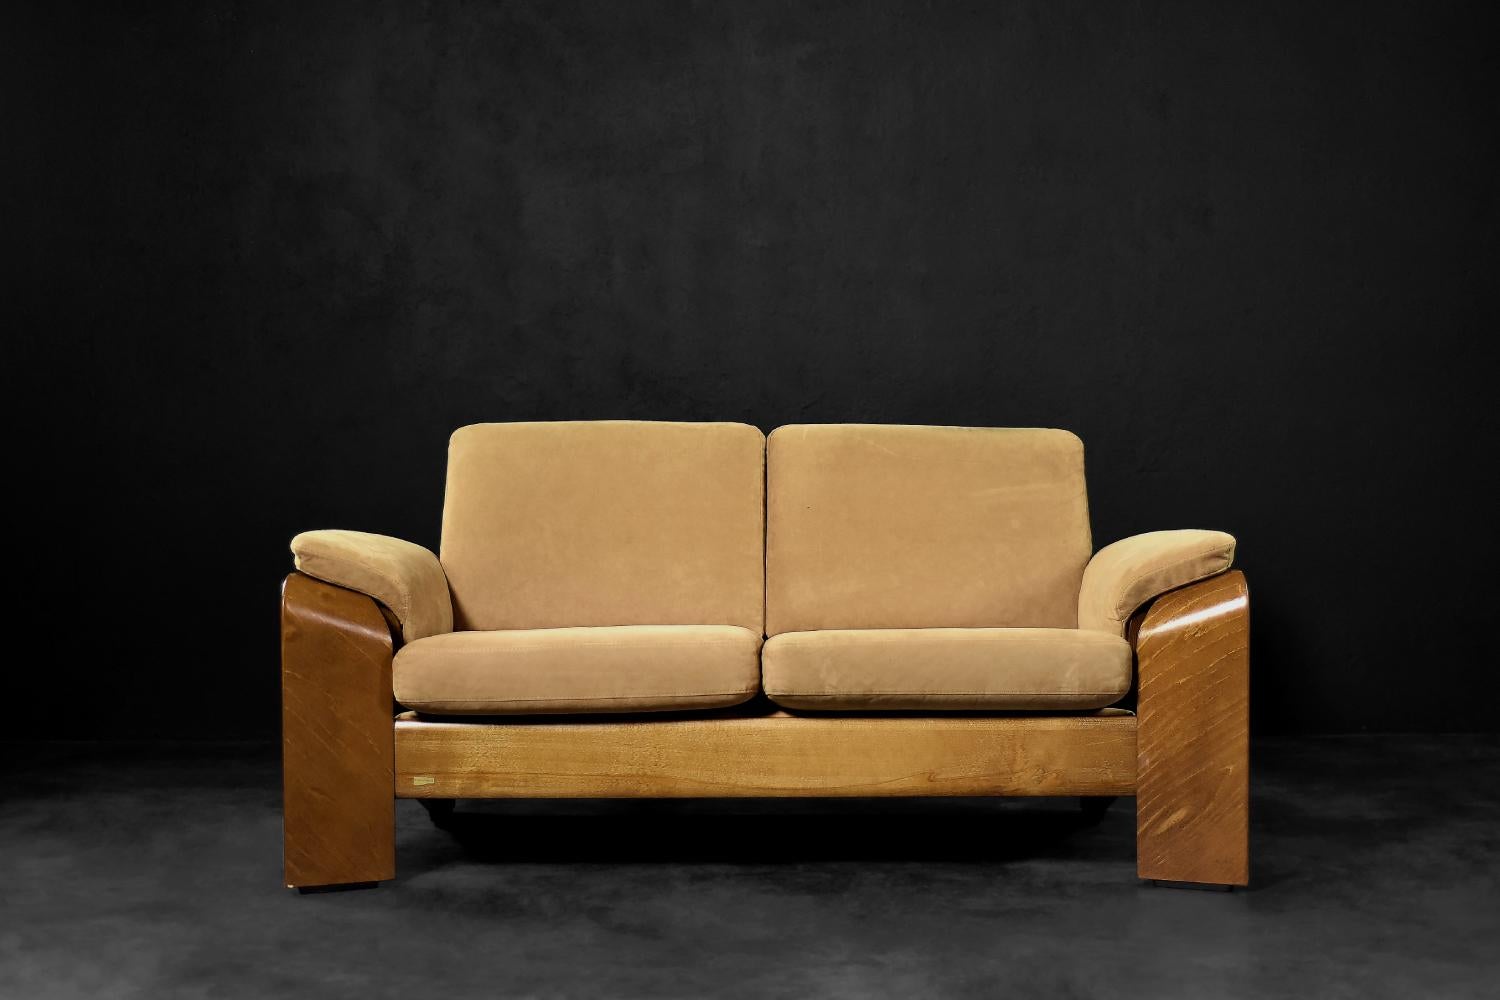 Ce canapé moderne à deux places, modèle Pegasus Low Back Loveseat, a été fabriqué par la société norvégienne Ekornes. Le cadre non conventionnel est fabriqué en bois de teck courbé dans une chaude nuance de brun. Les accoudoirs incurvés se fondent